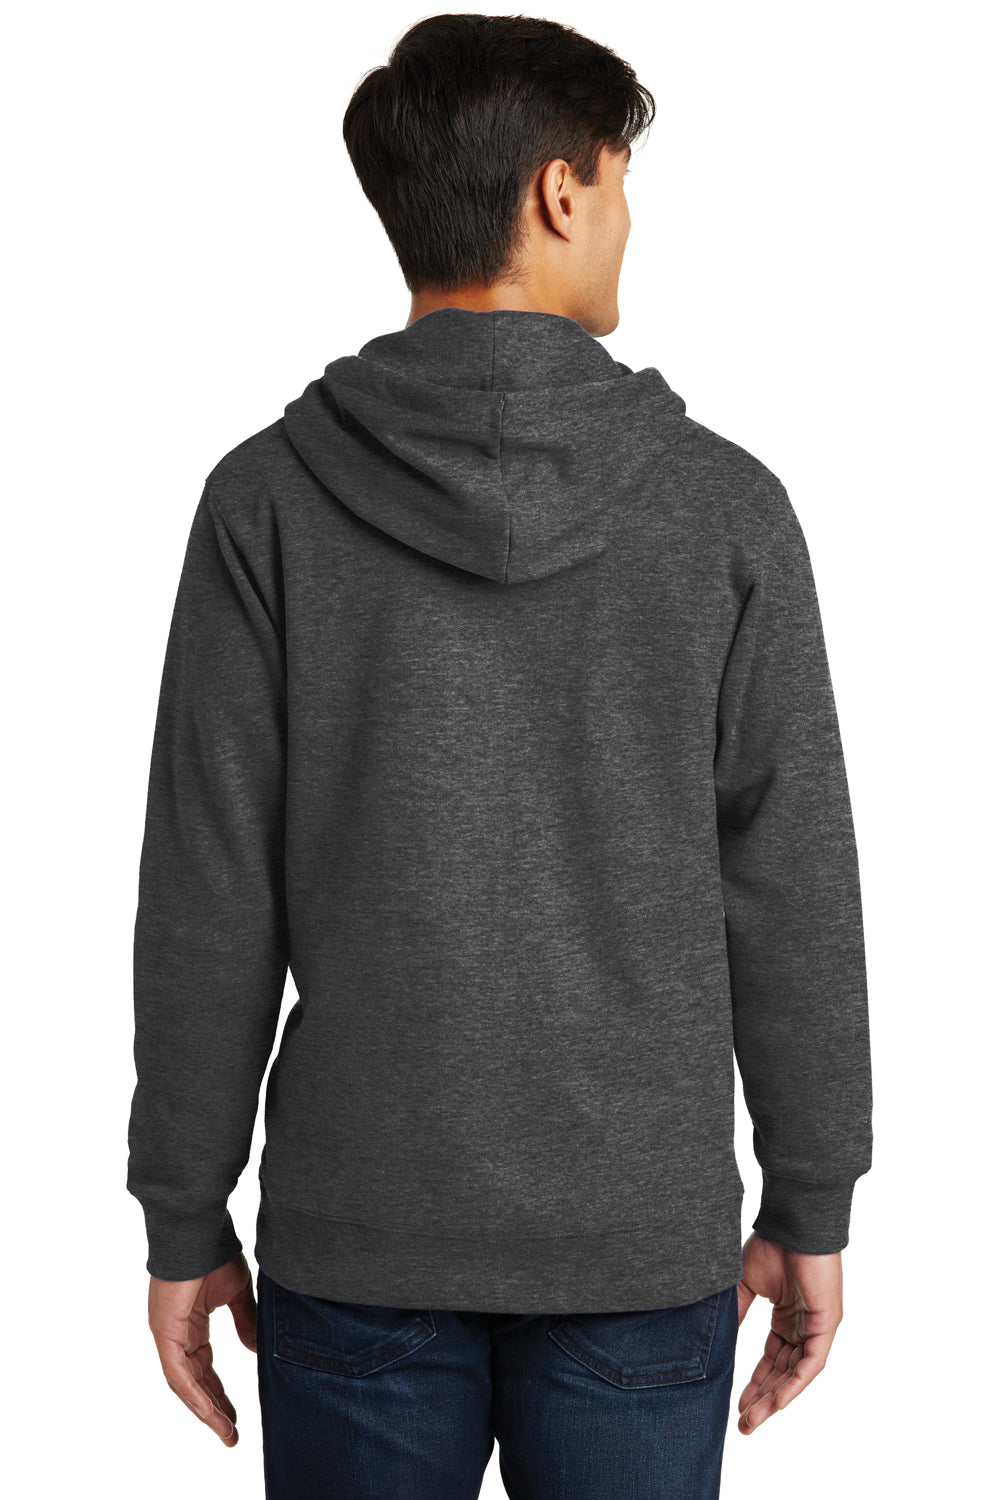 Port & Company PC850ZH Mens Fan Favorite Fleece Full Zip Hooded Sweatshirt Hoodie Heather Dark Grey Back